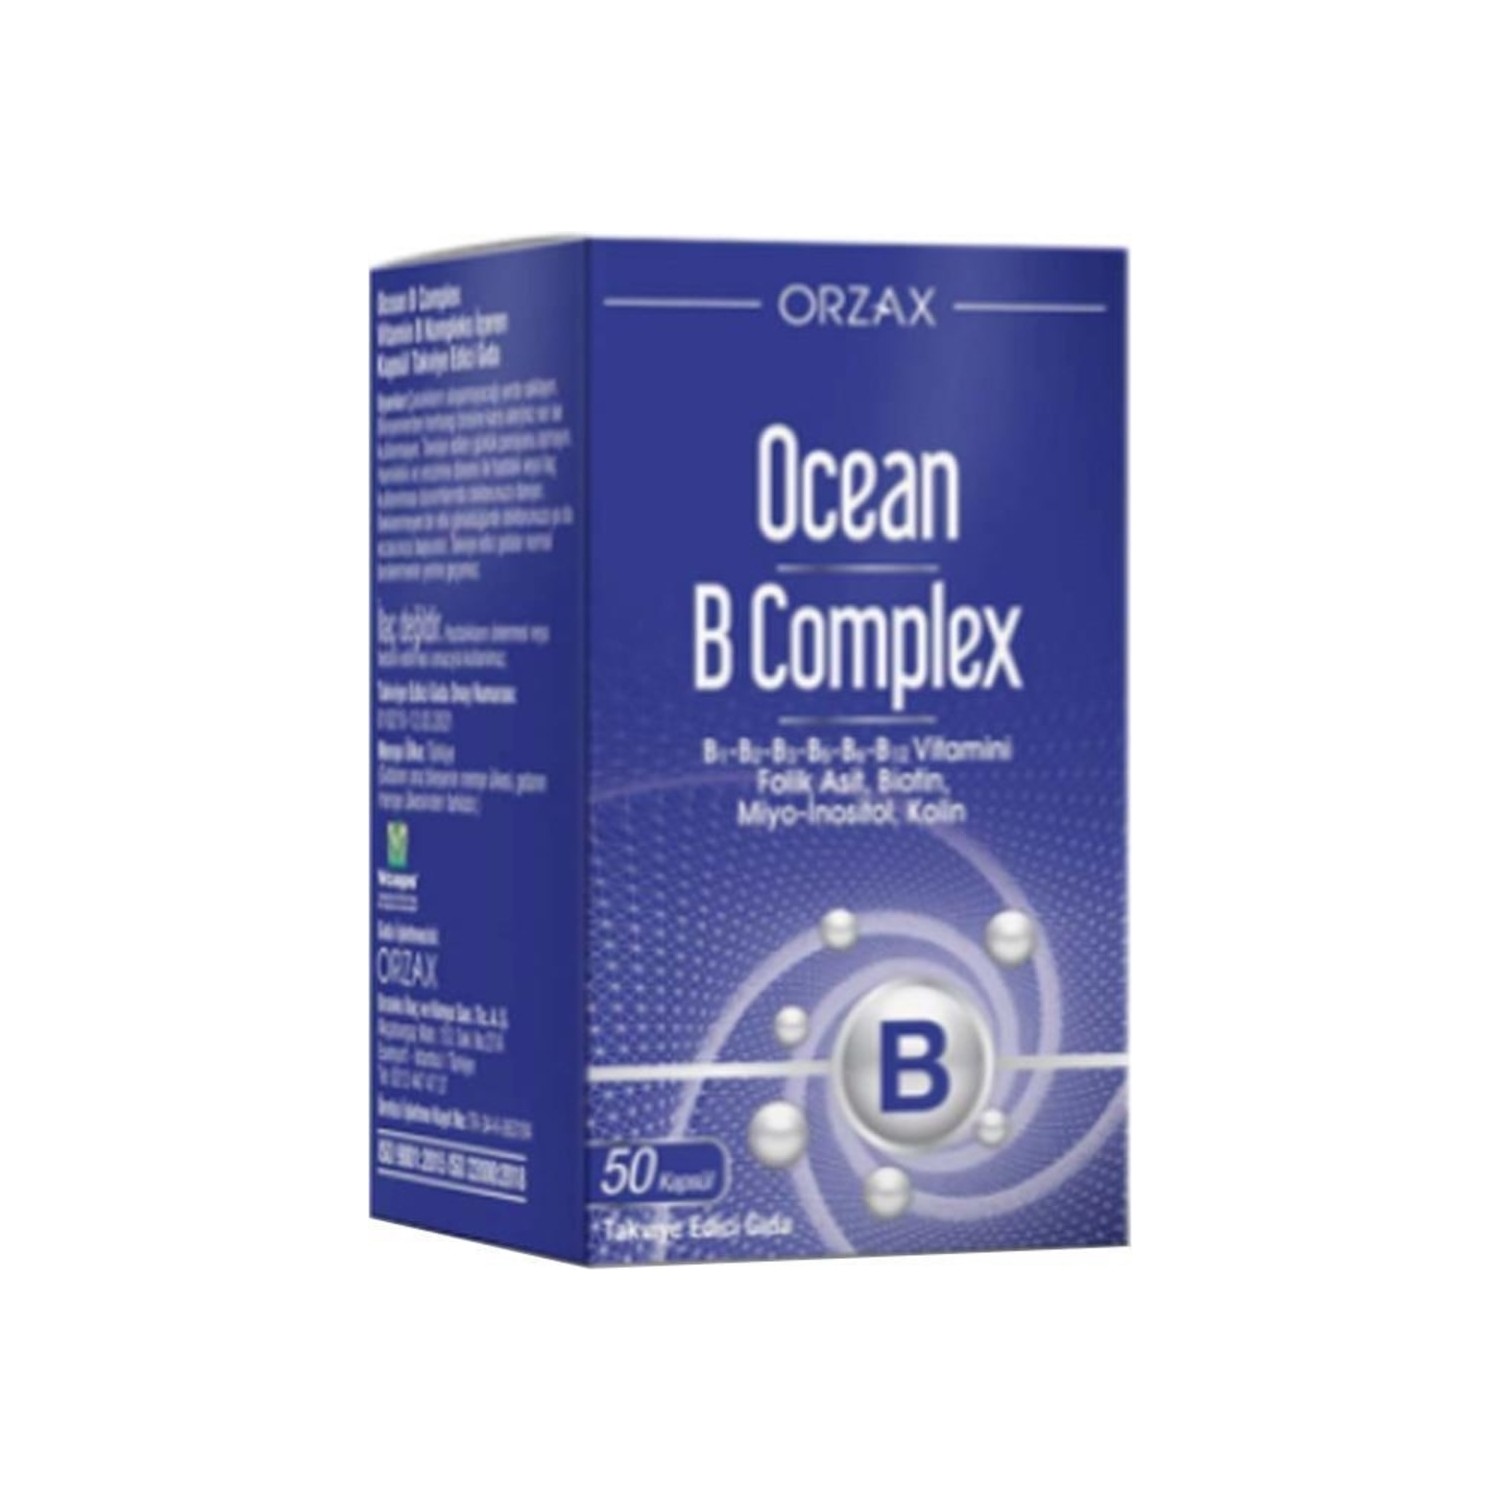 Пищевая комплексная добавка Ocean Orzax B Supplementary Food, 50 капсул капсулы kfd b complex 60 поддерживают работу мозга